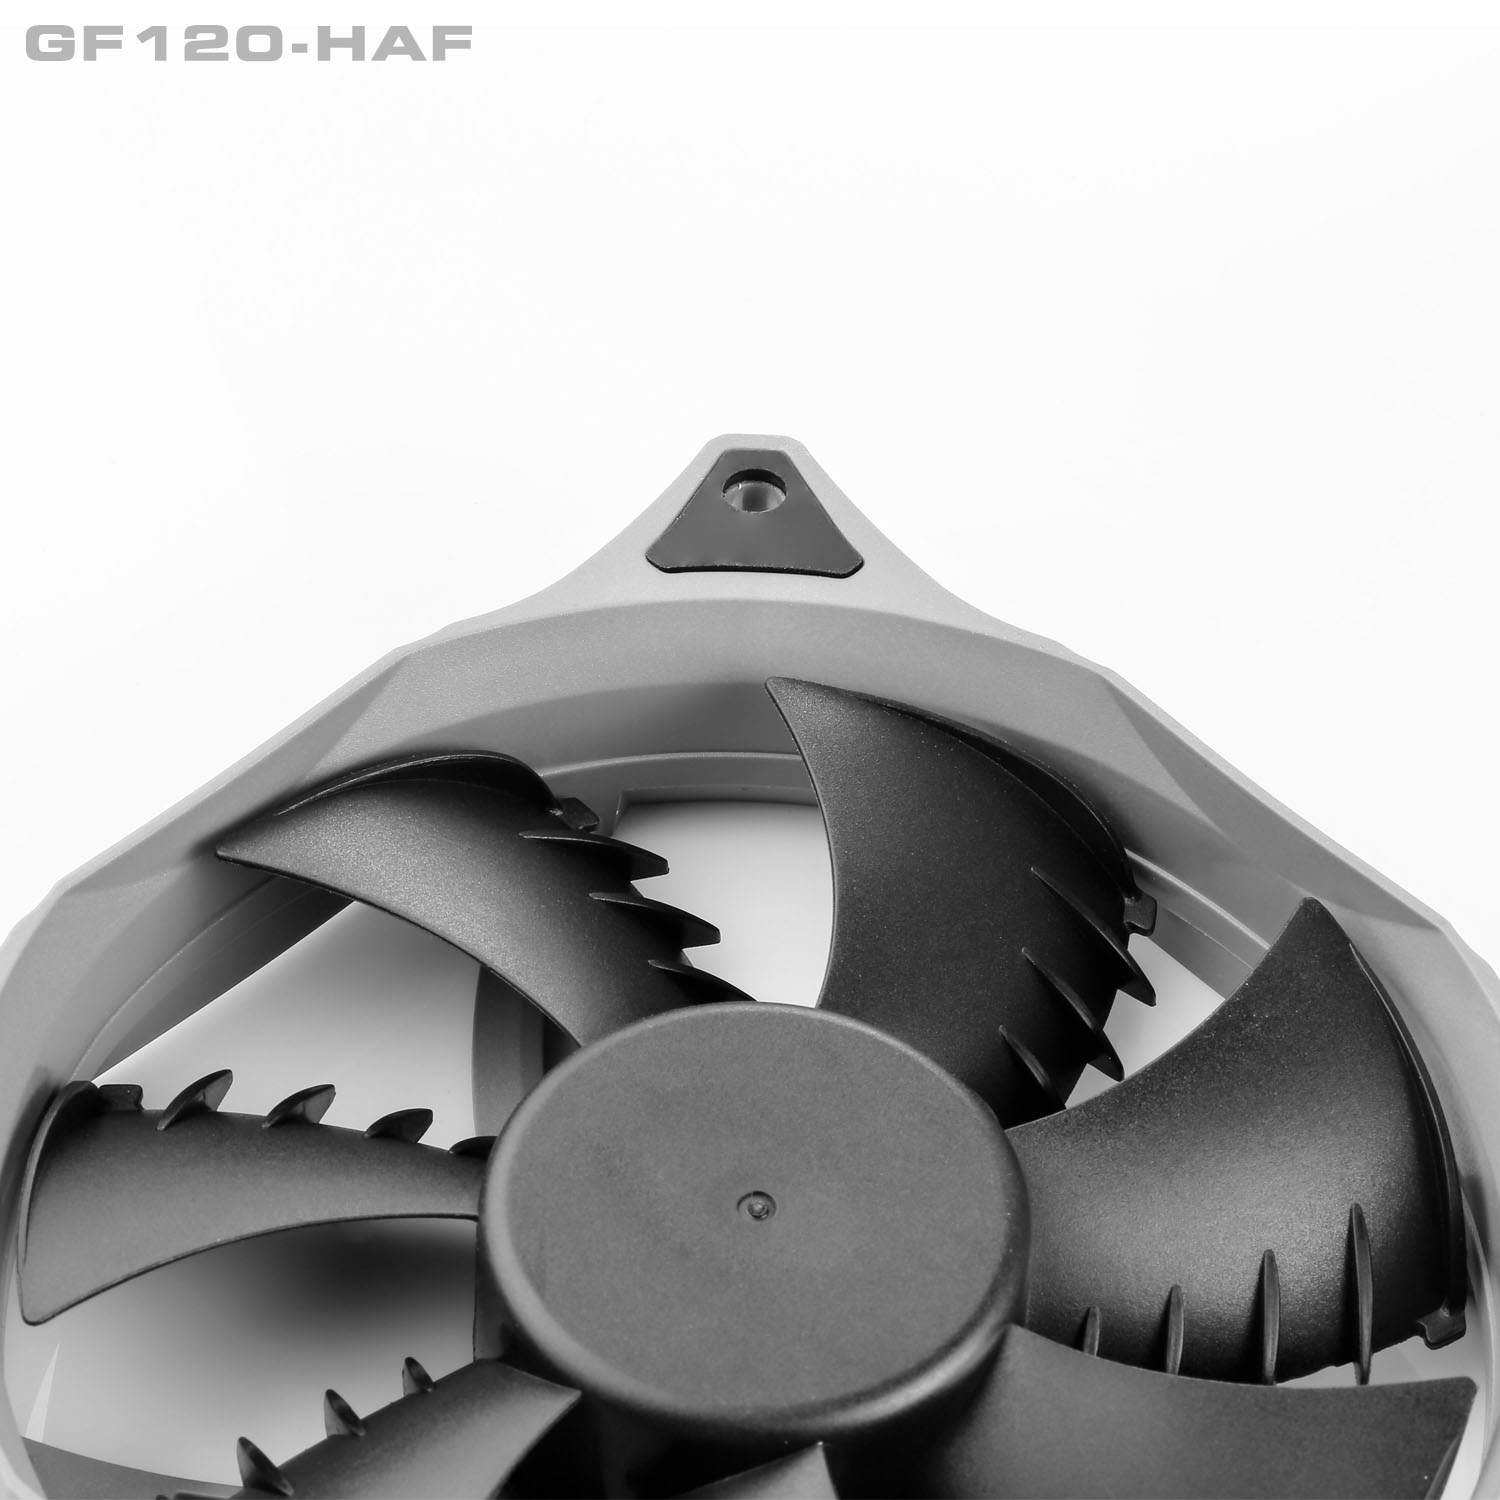 فن پر سرعت و قدرتمند گرین GF120-HAF